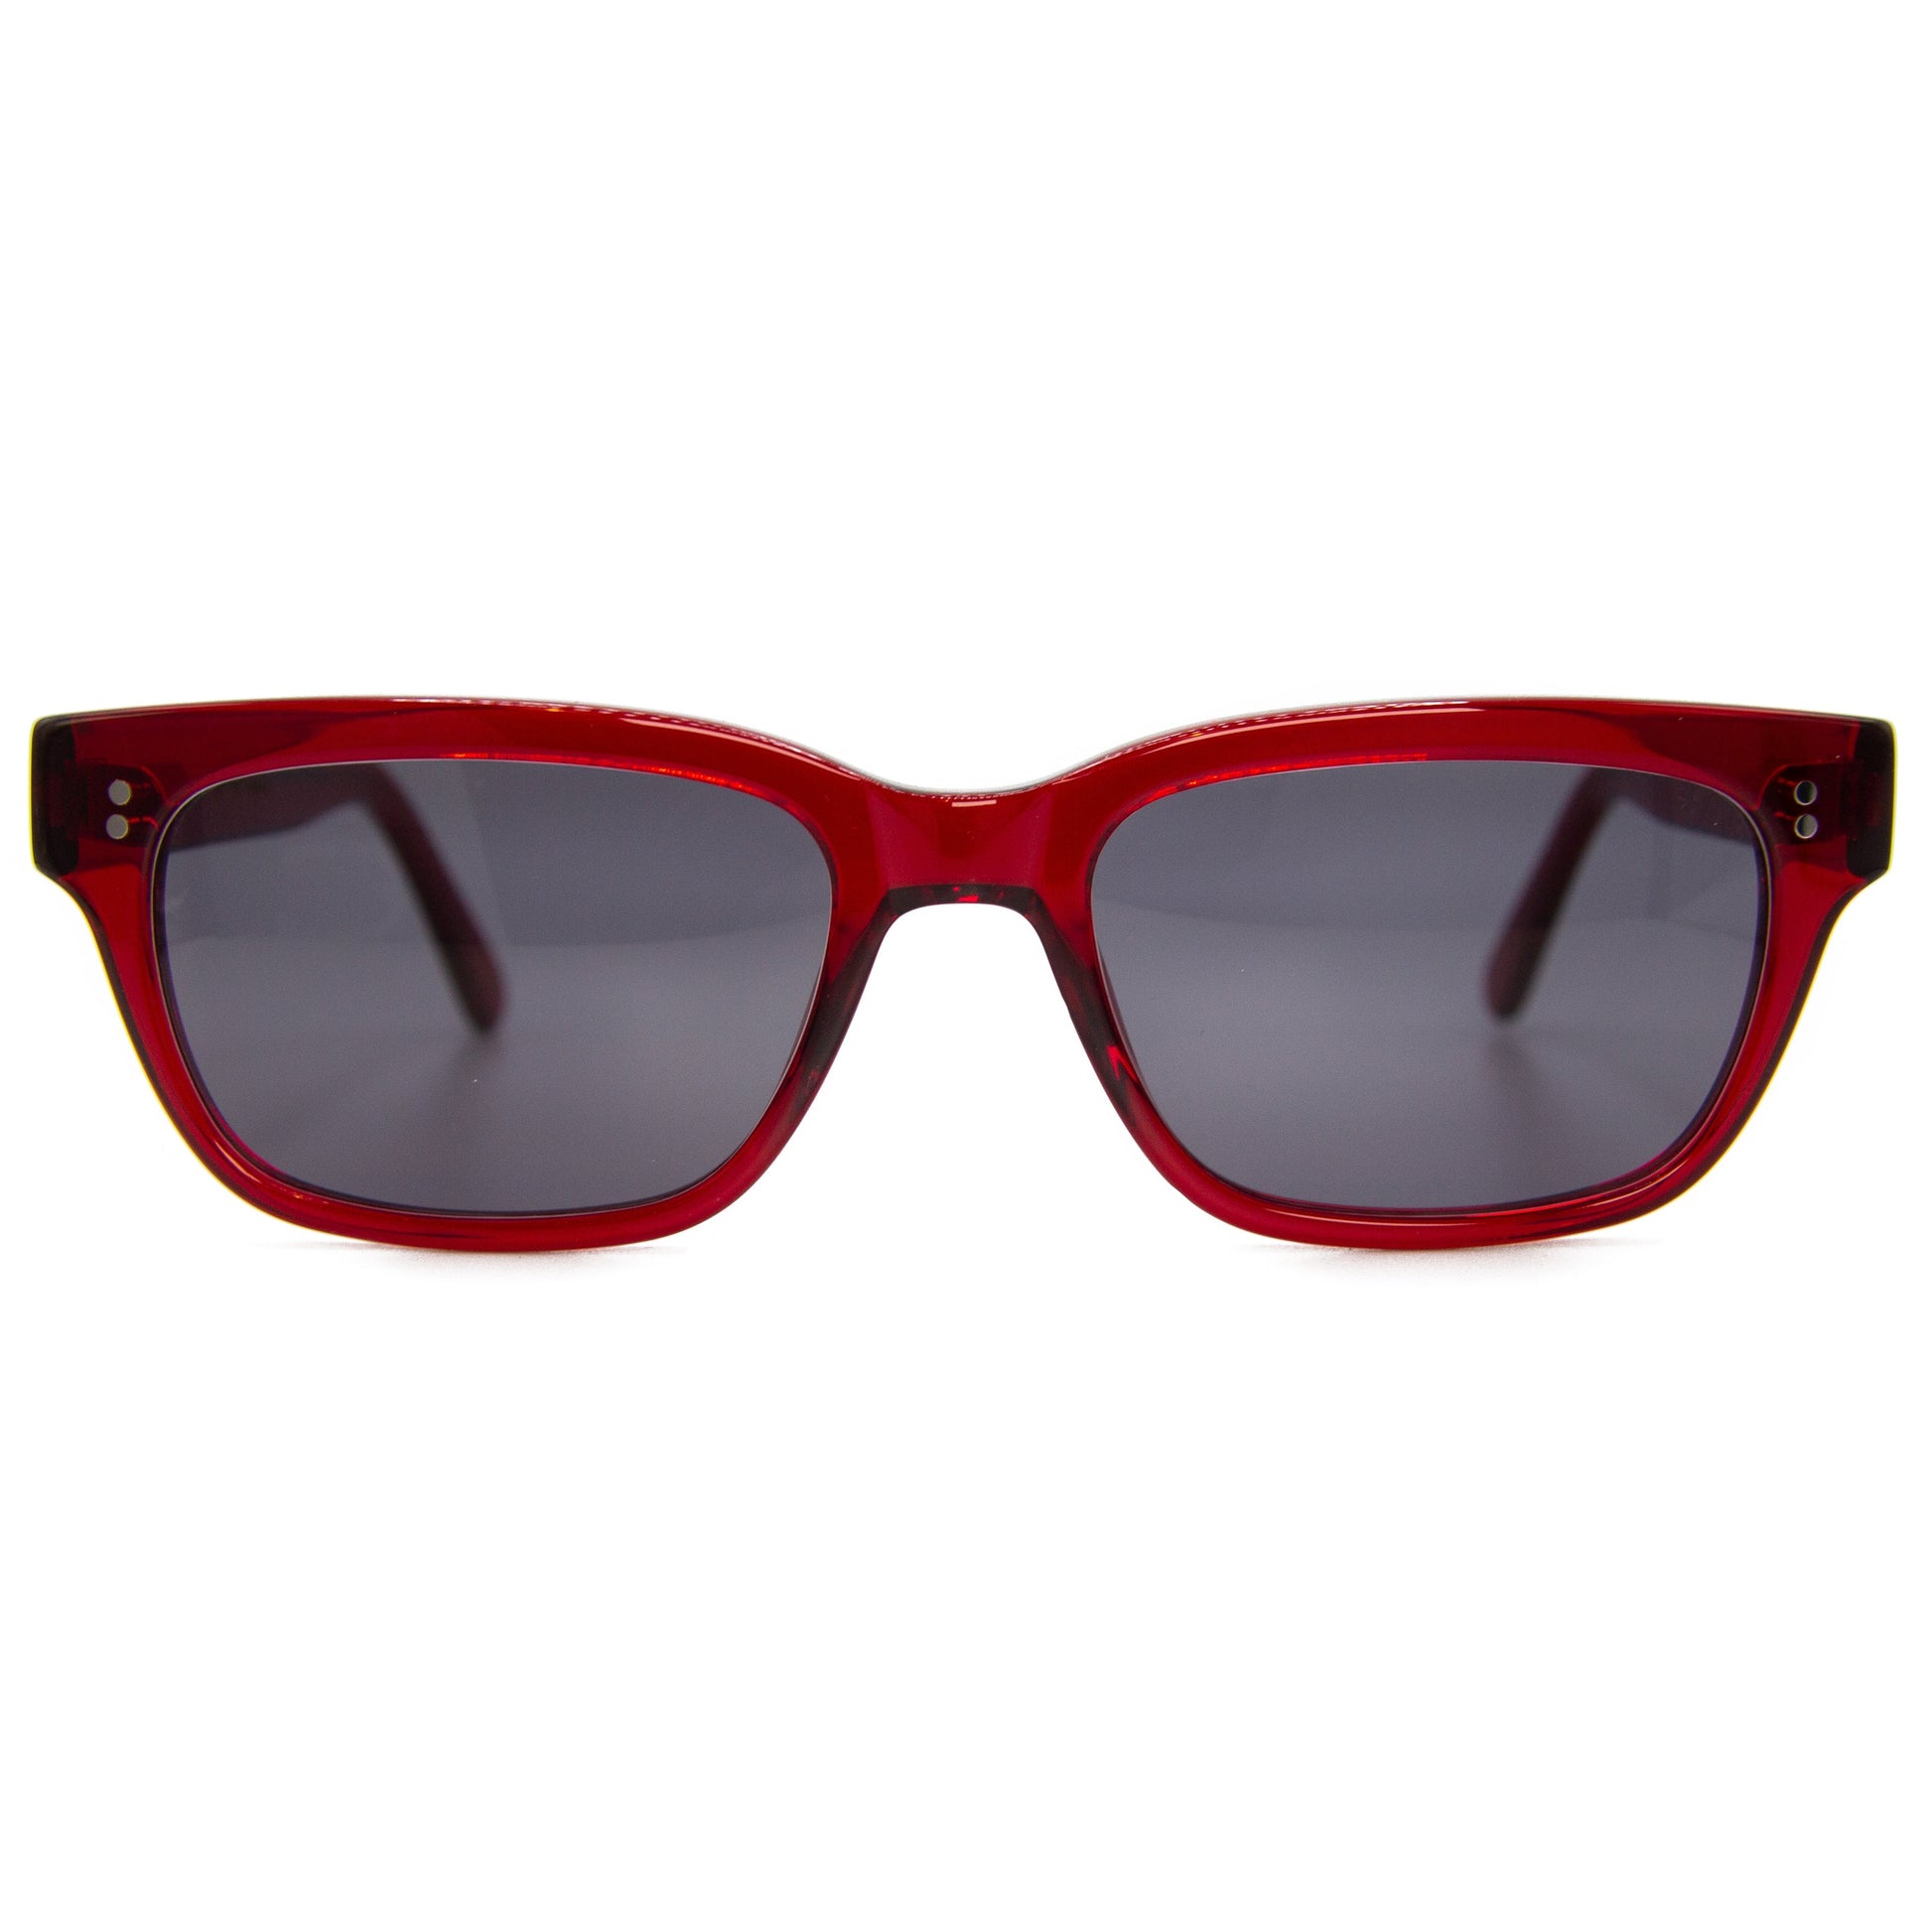 Chunky Rectangular Red Sunglasses